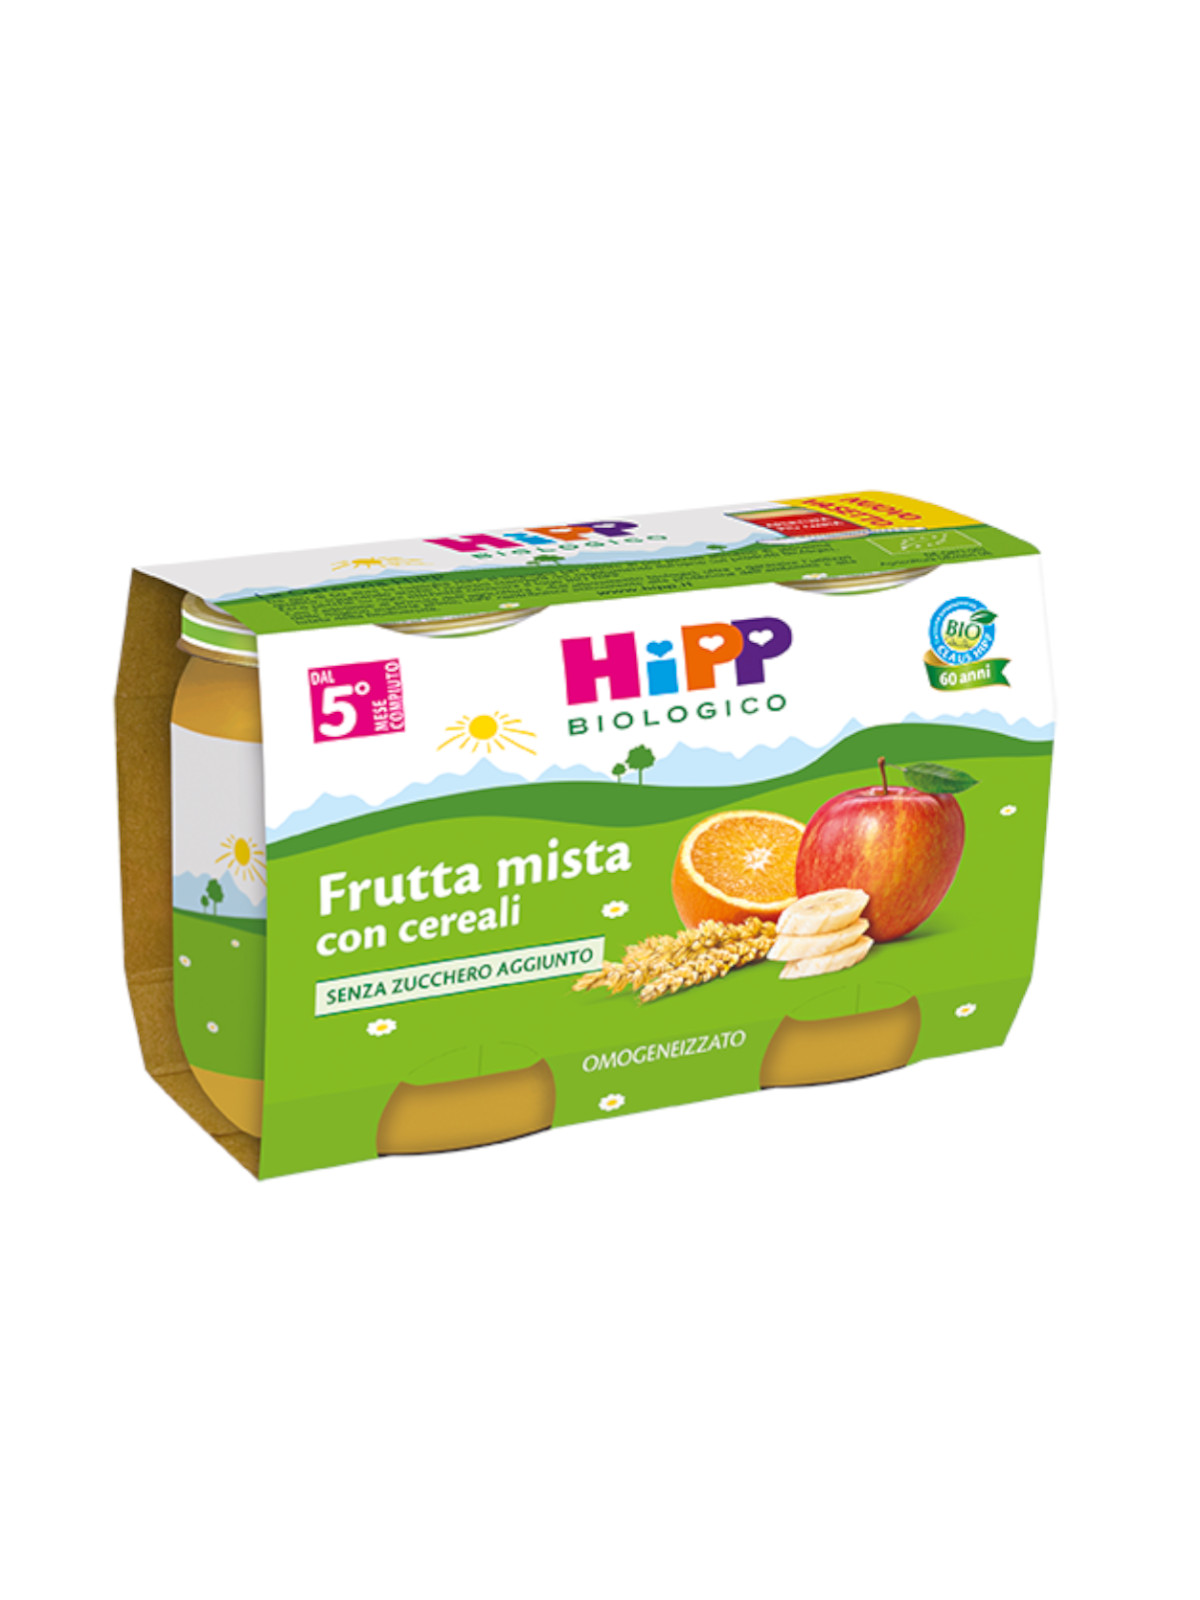 Hipp - Omogeneizzato Frutta mista con cereali 2x125g - Bimbostore